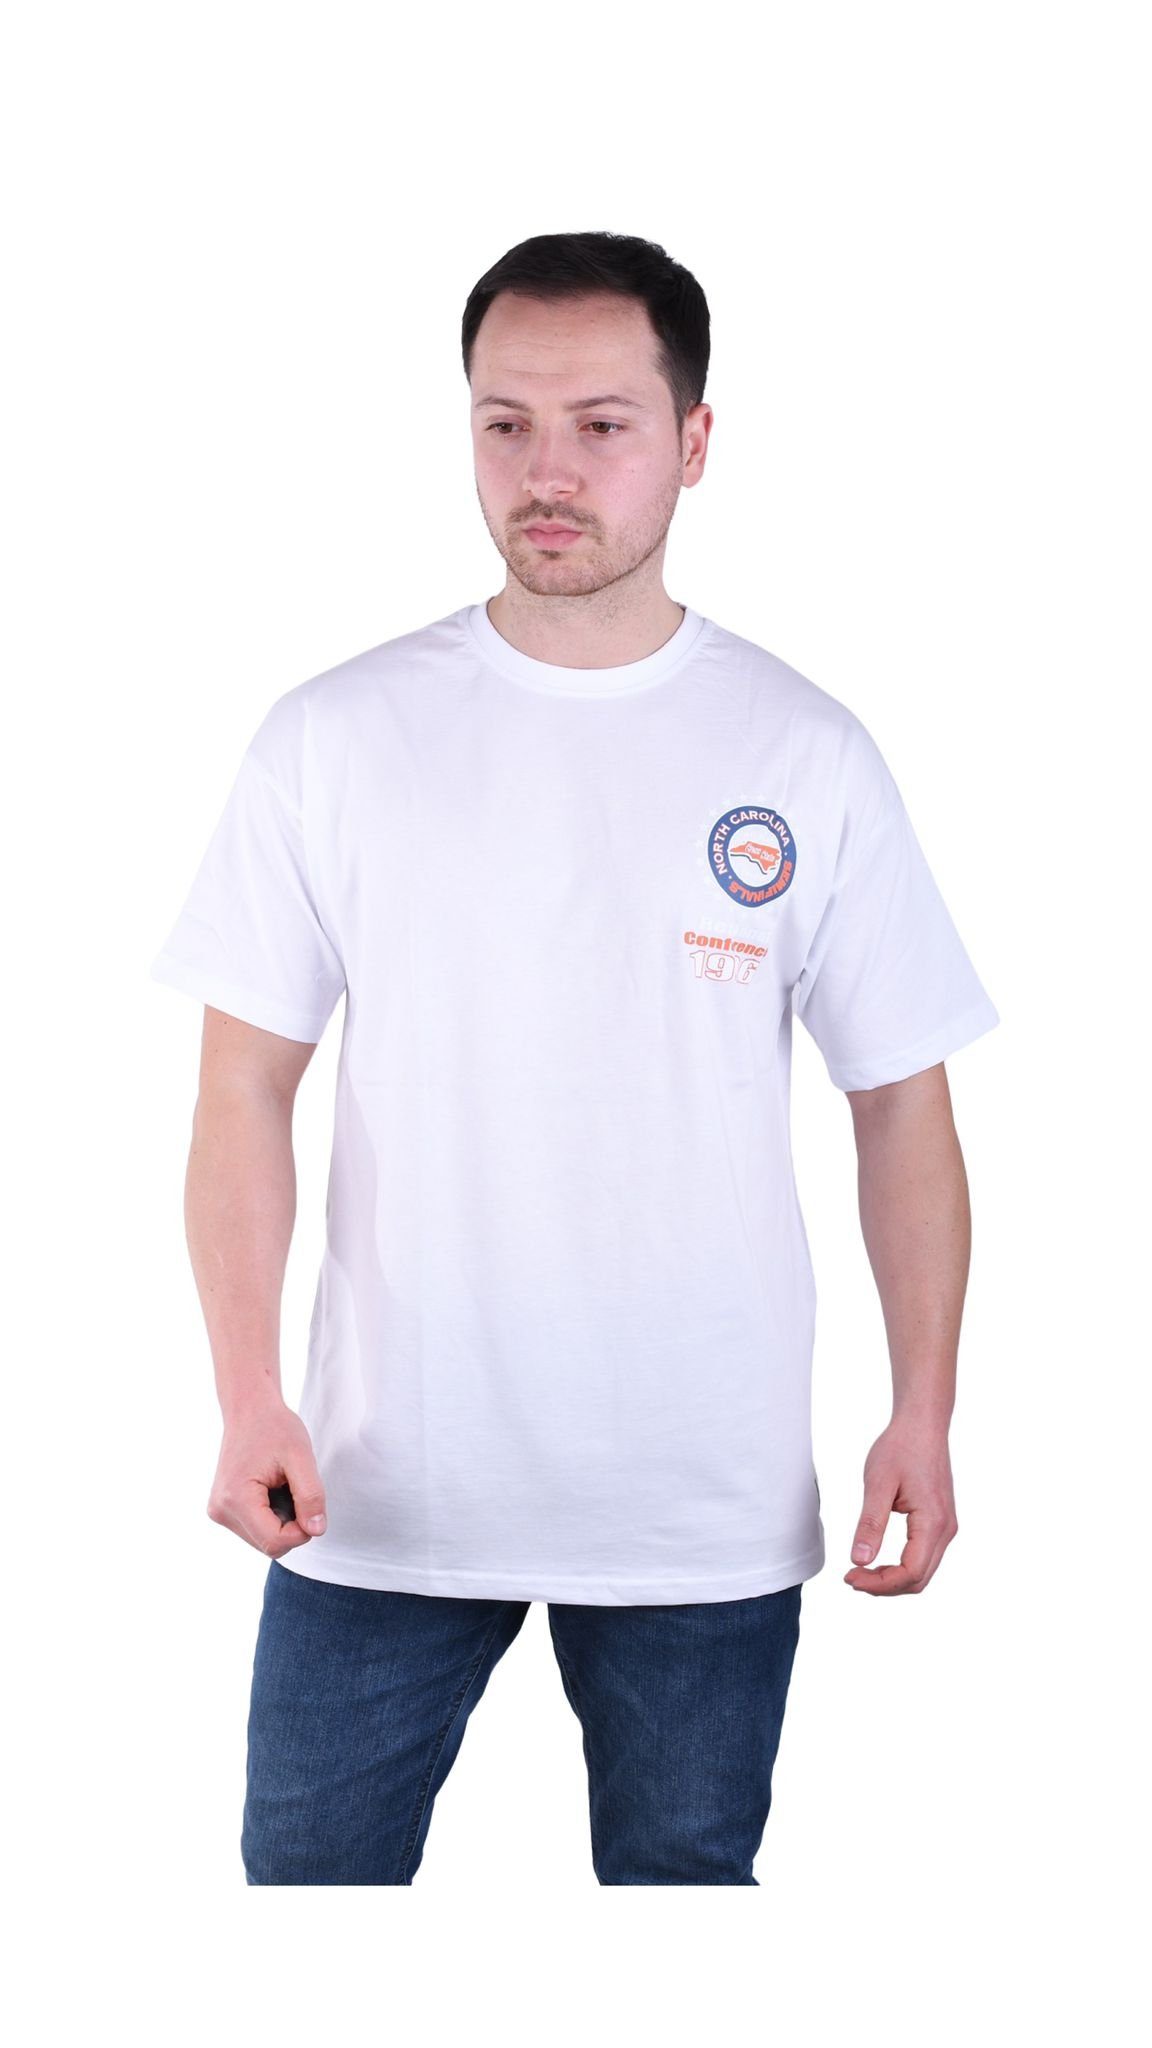 Megaman Jeans T-Shirt Megaman, Herren Oversize Weiß T-Shirt